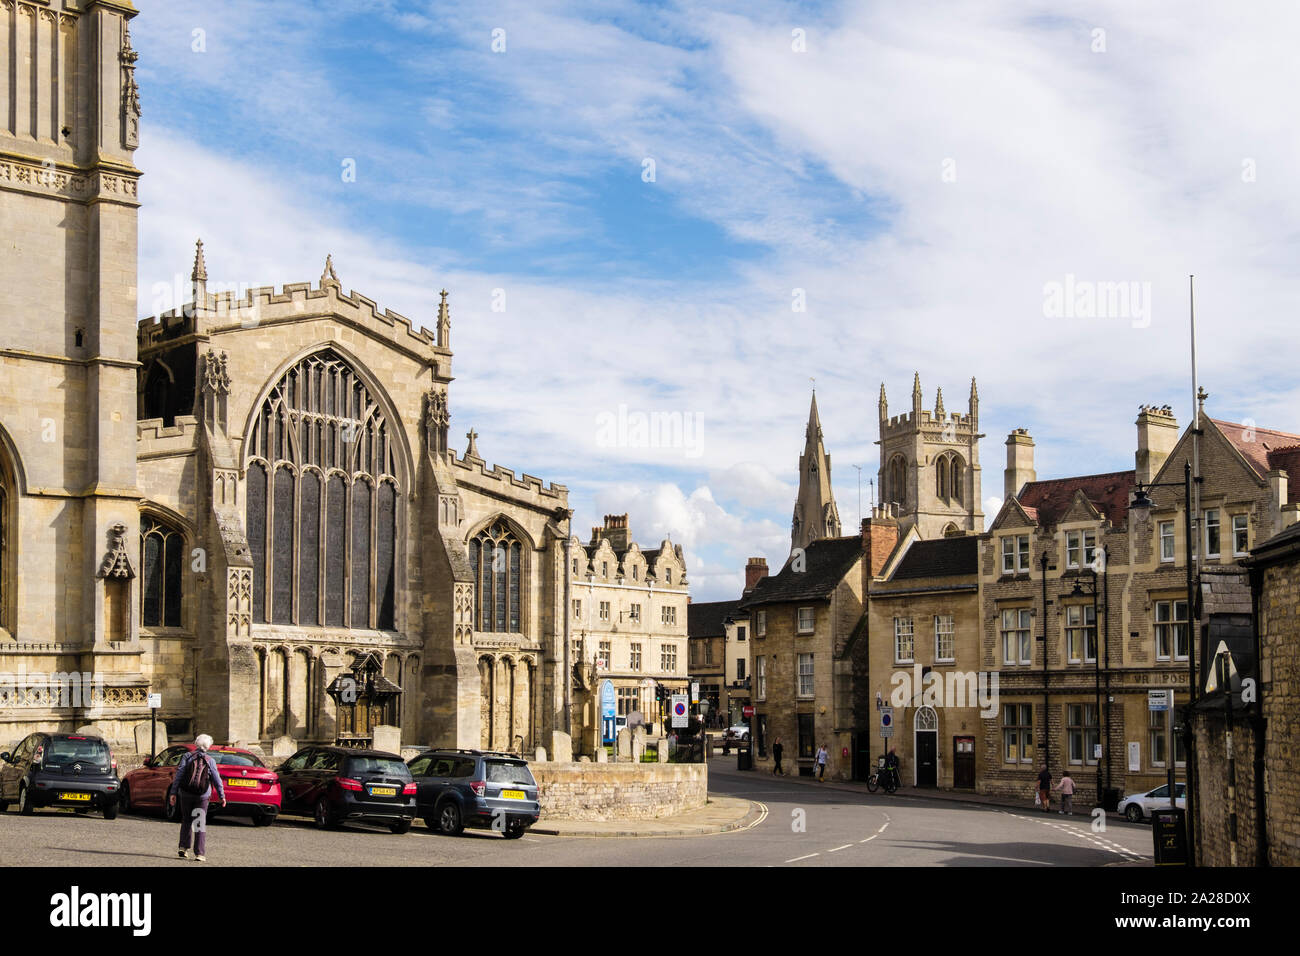 Vieux bâtiments en pierre calcaire et All Saints Church. All Saints Street, Stamford, Lincolnshire, Angleterre, Royaume-Uni, Angleterre Banque D'Images